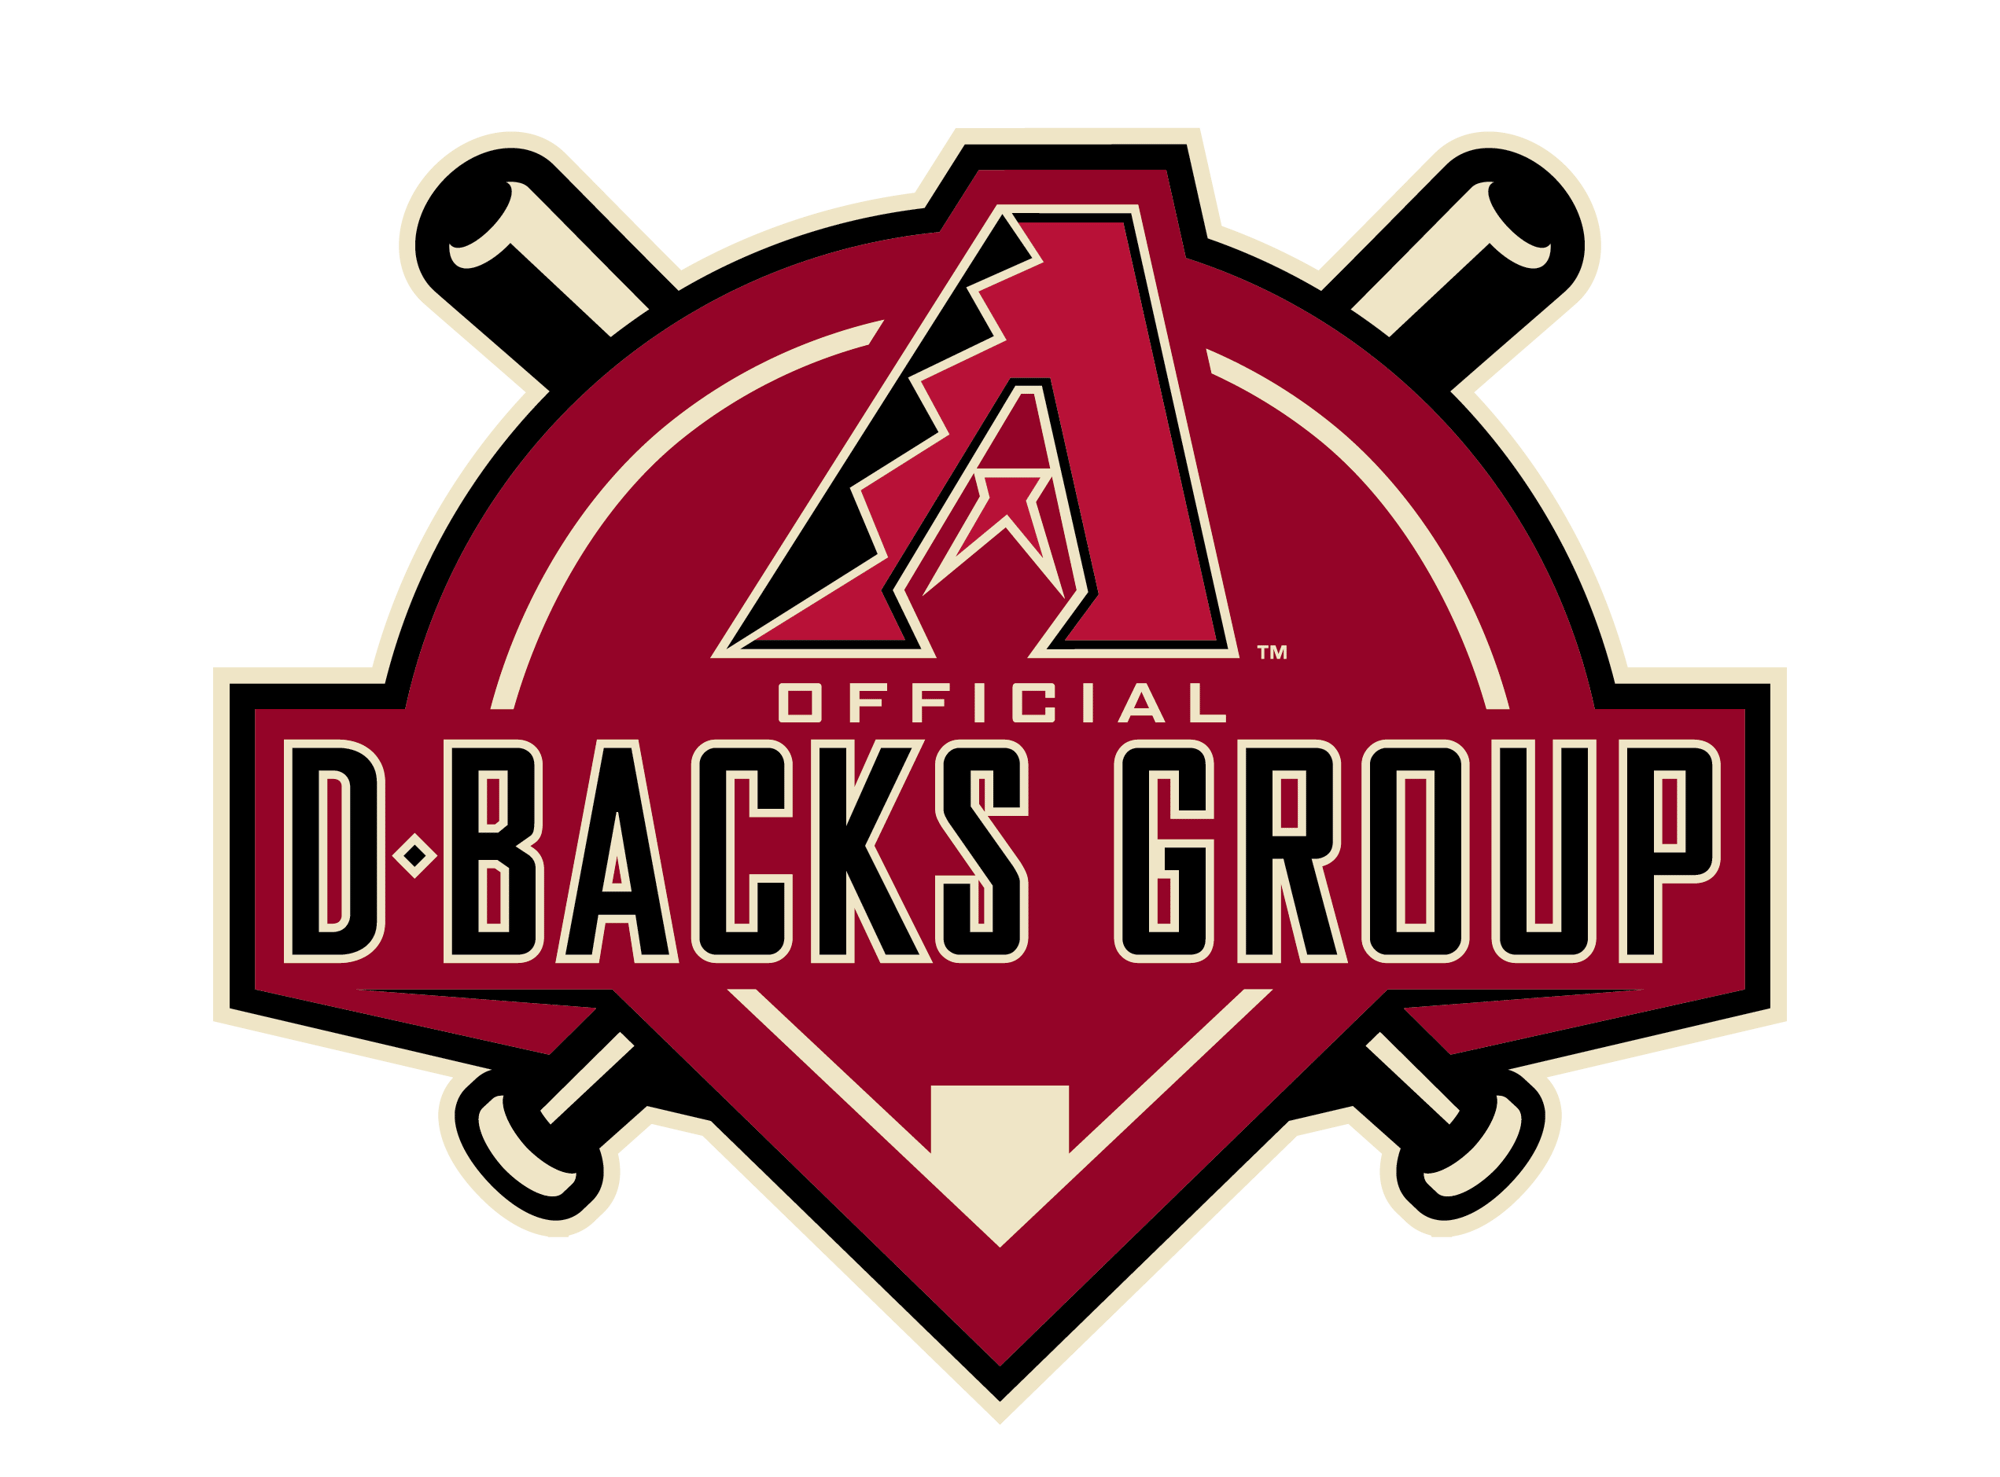 D-backs_Official-D-backs-Group_Logo